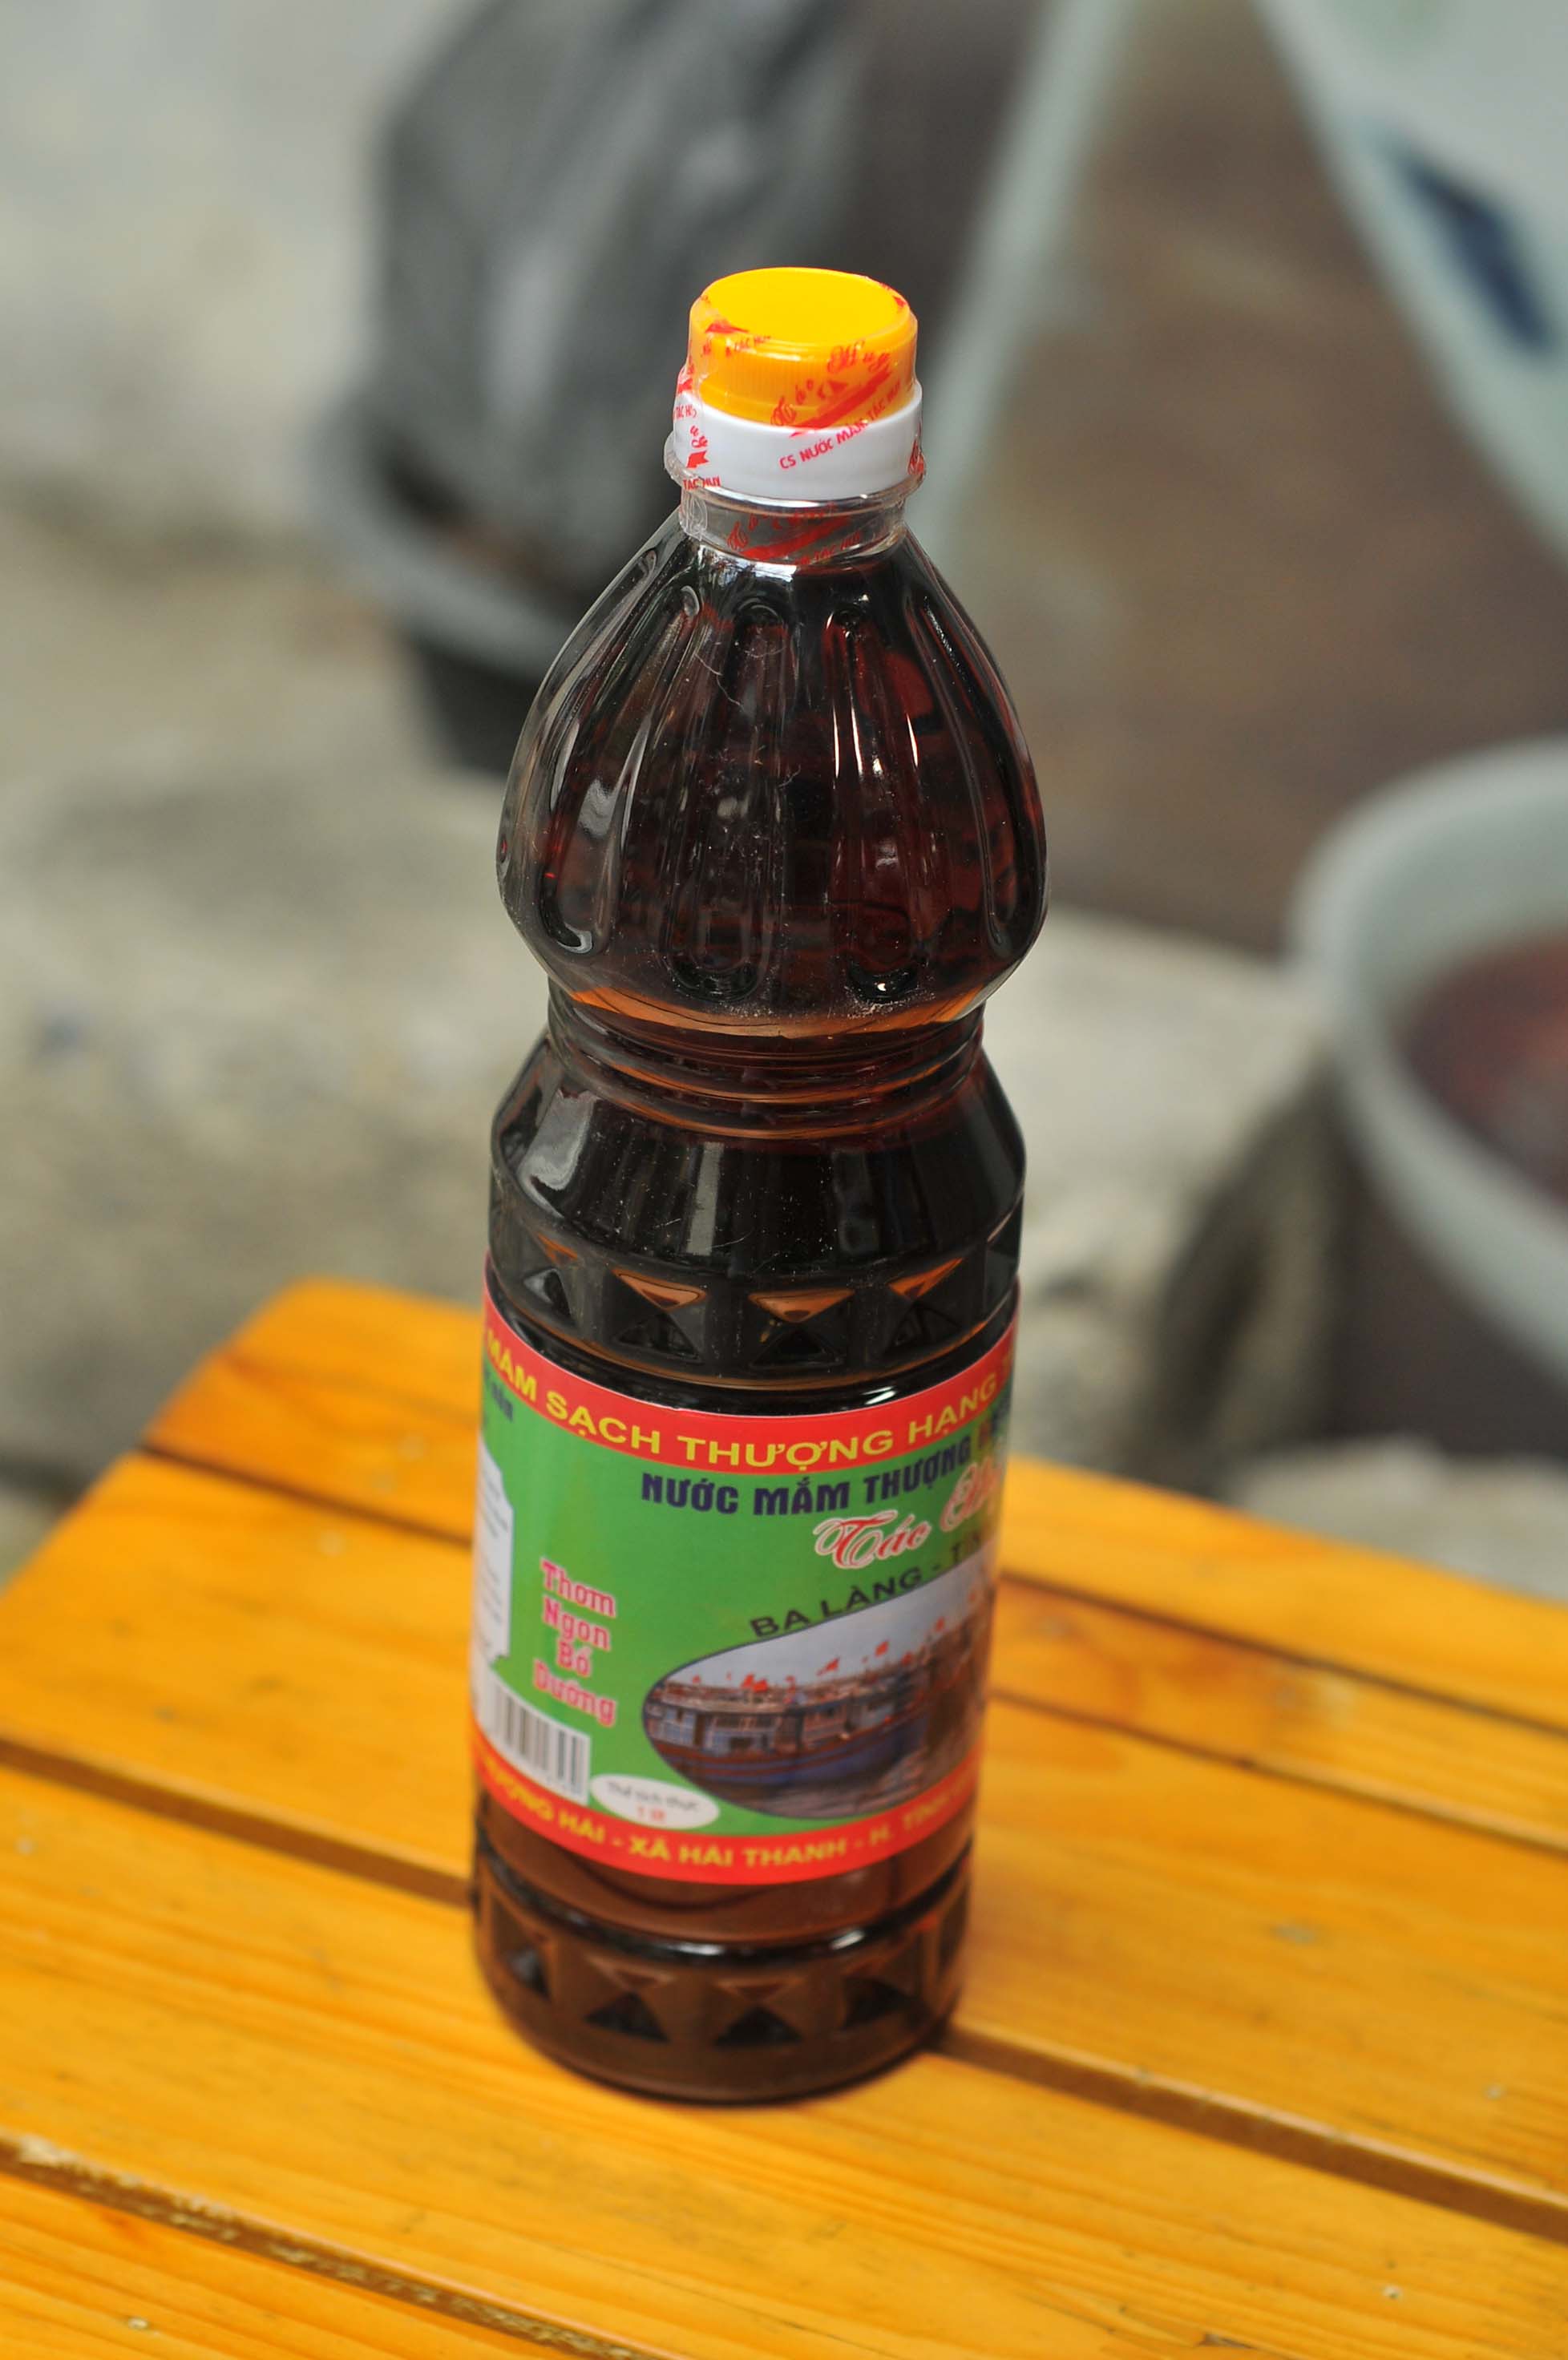 Nước mắm thượng hạng đặc sản Ba làng - Thanh Hóa (chai 1l)